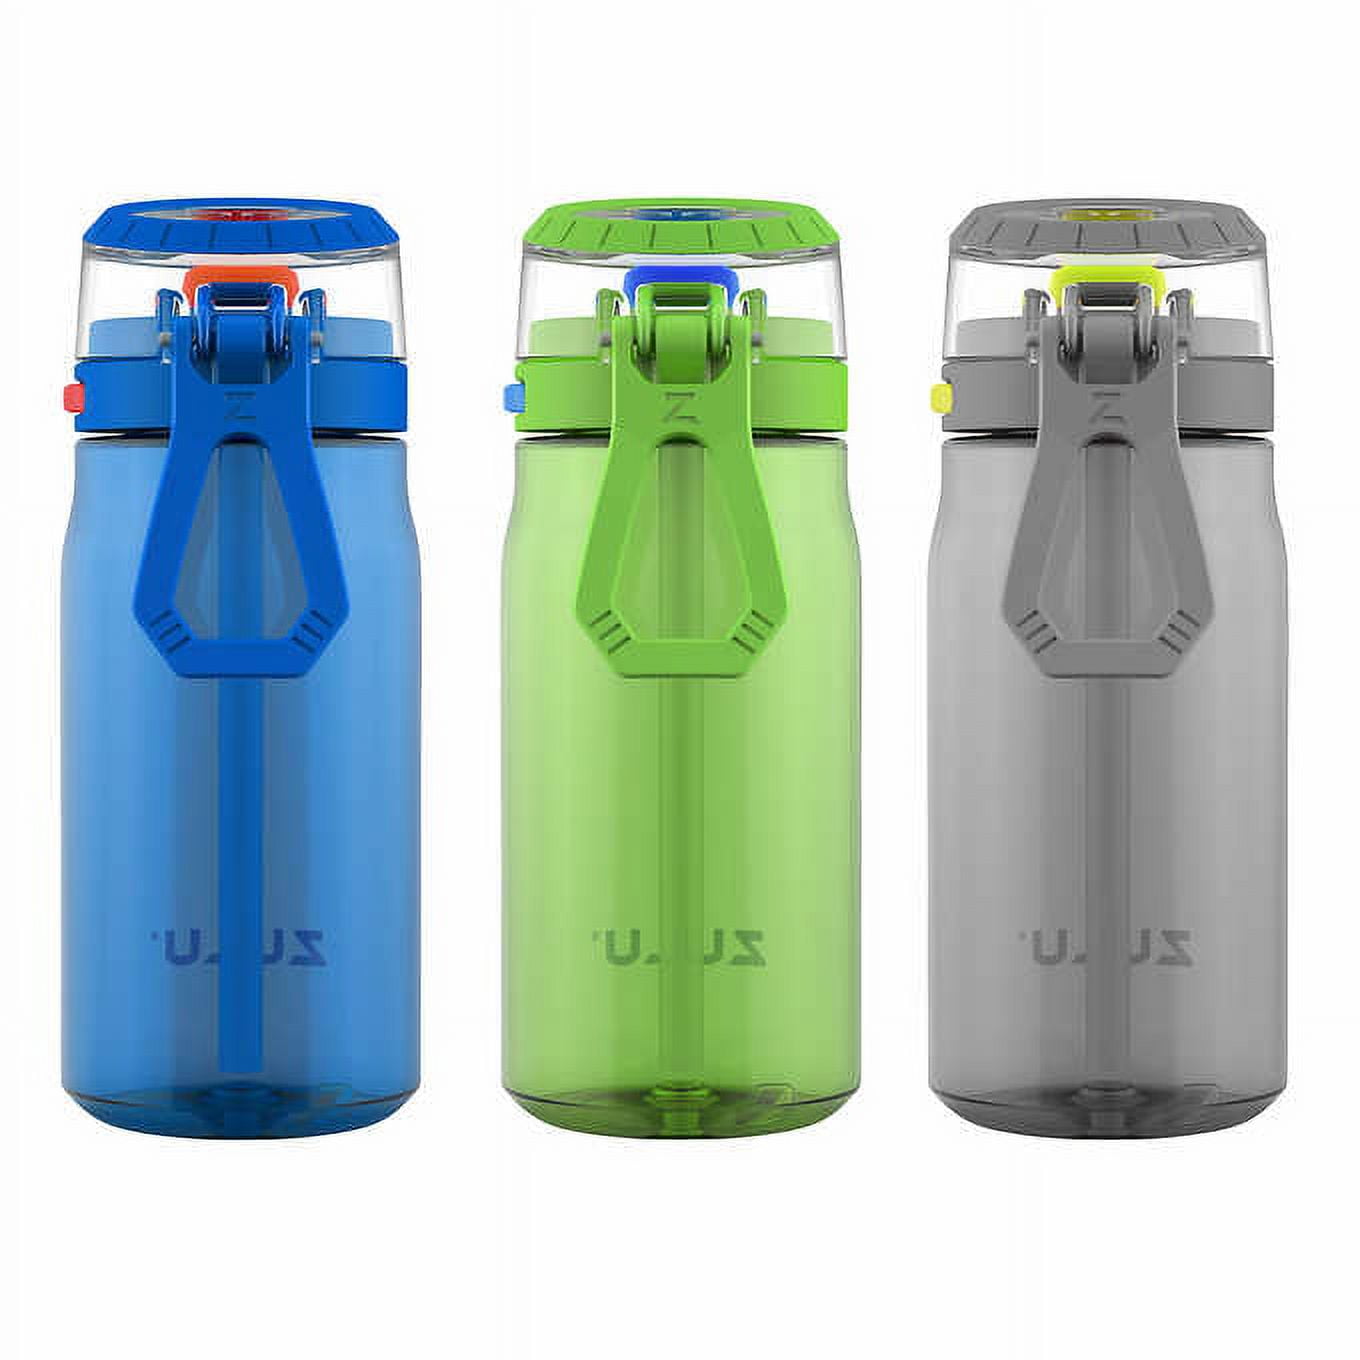 Personalized Zulu Tritan Water Bottle 16oz. Kids Water Bottle / Back to  School / Easter Gift 